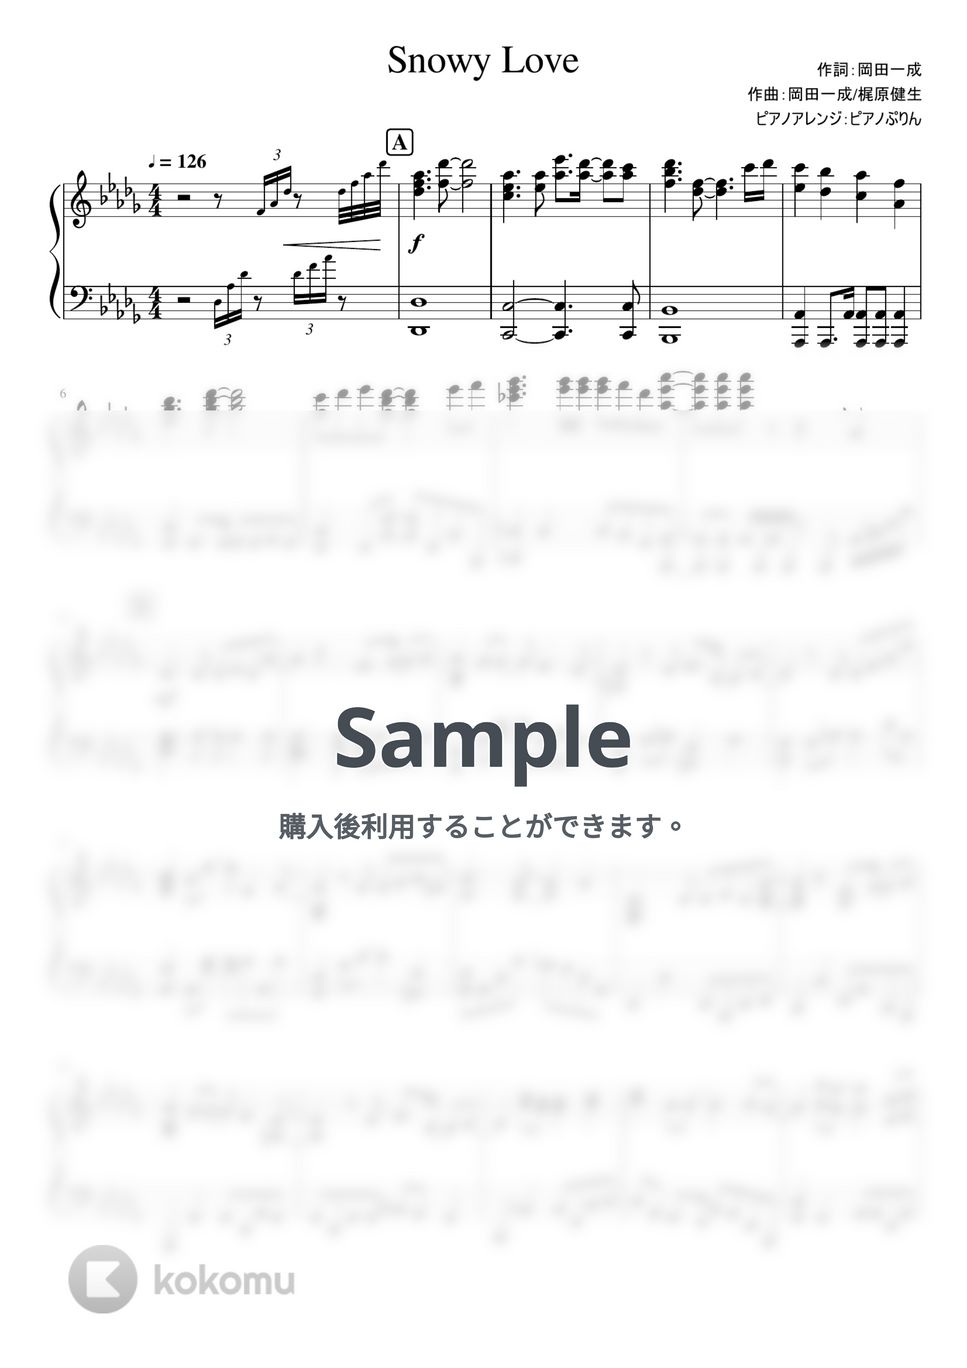 なにわ男子 - Snowy Love (6th Single「I Wish」/通常盤収録曲) by ピアノぷりん